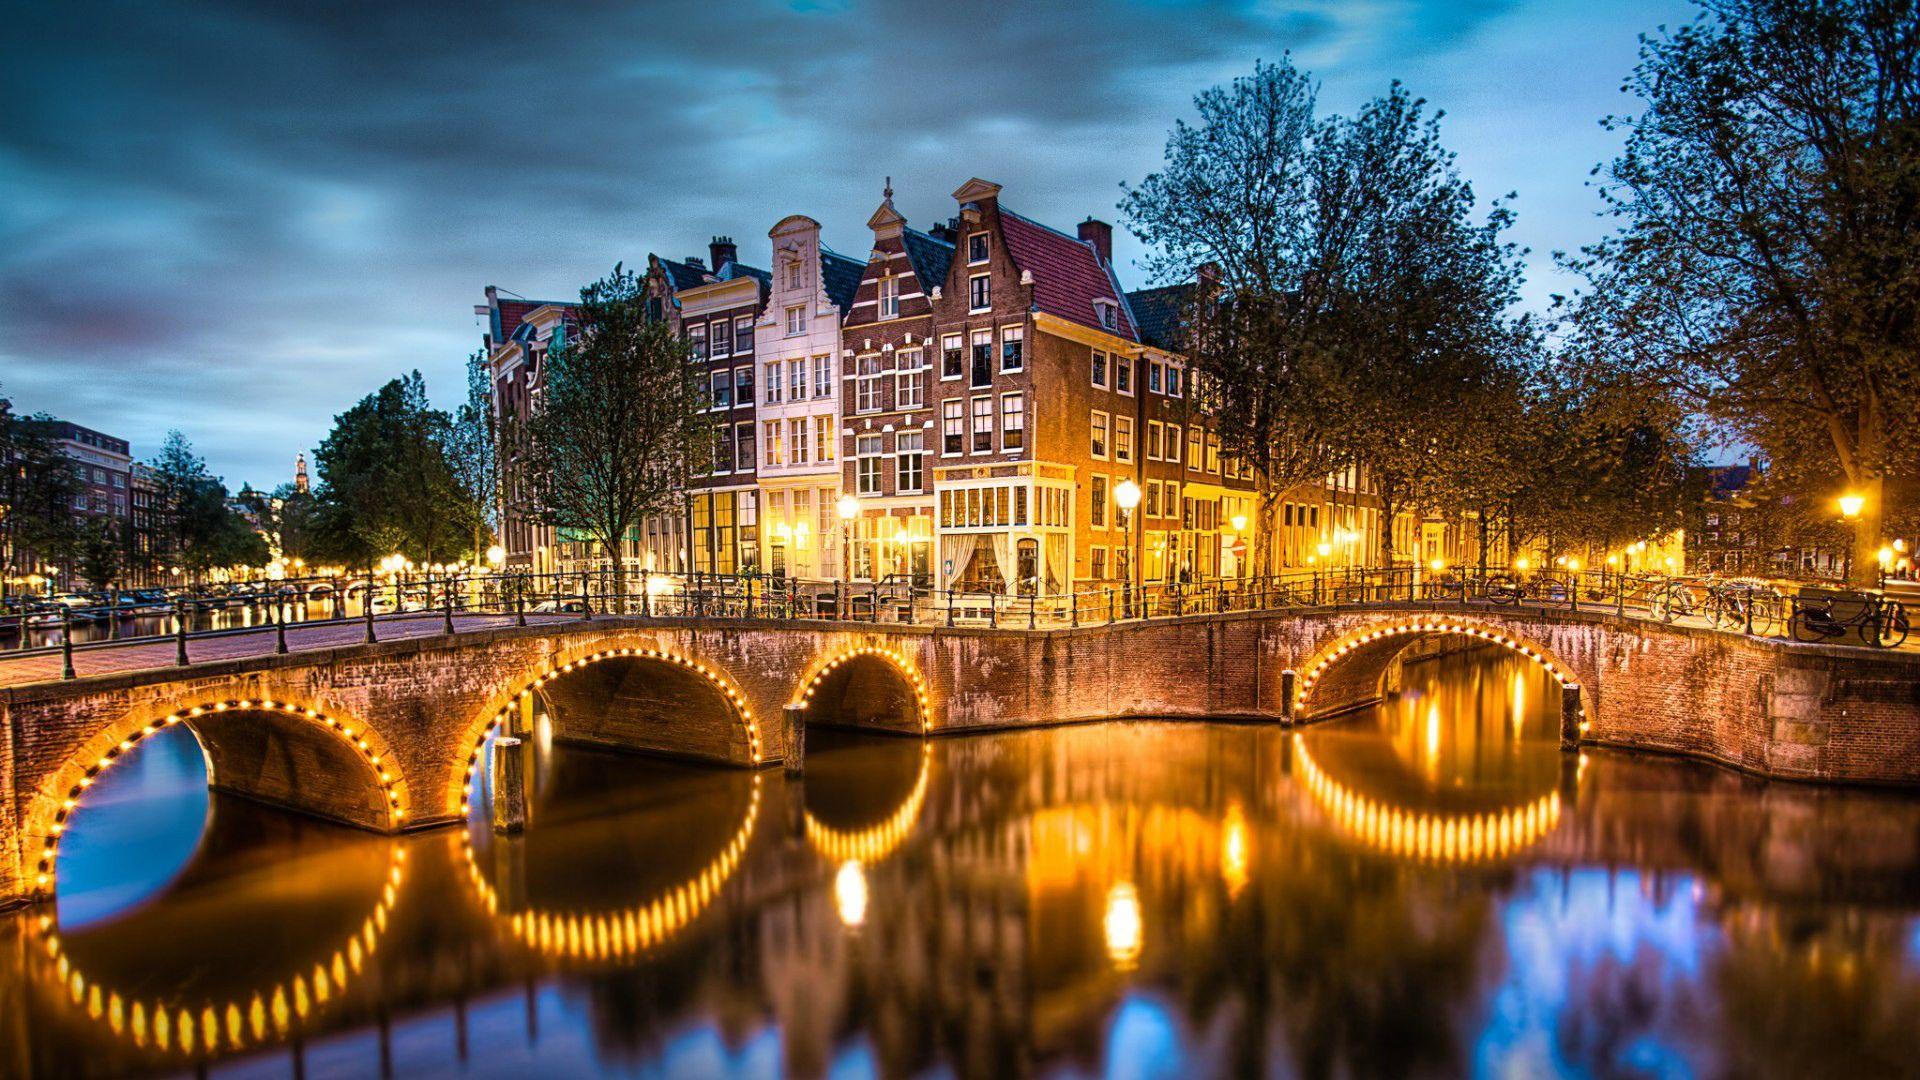 آمستردام (Amsterdam)